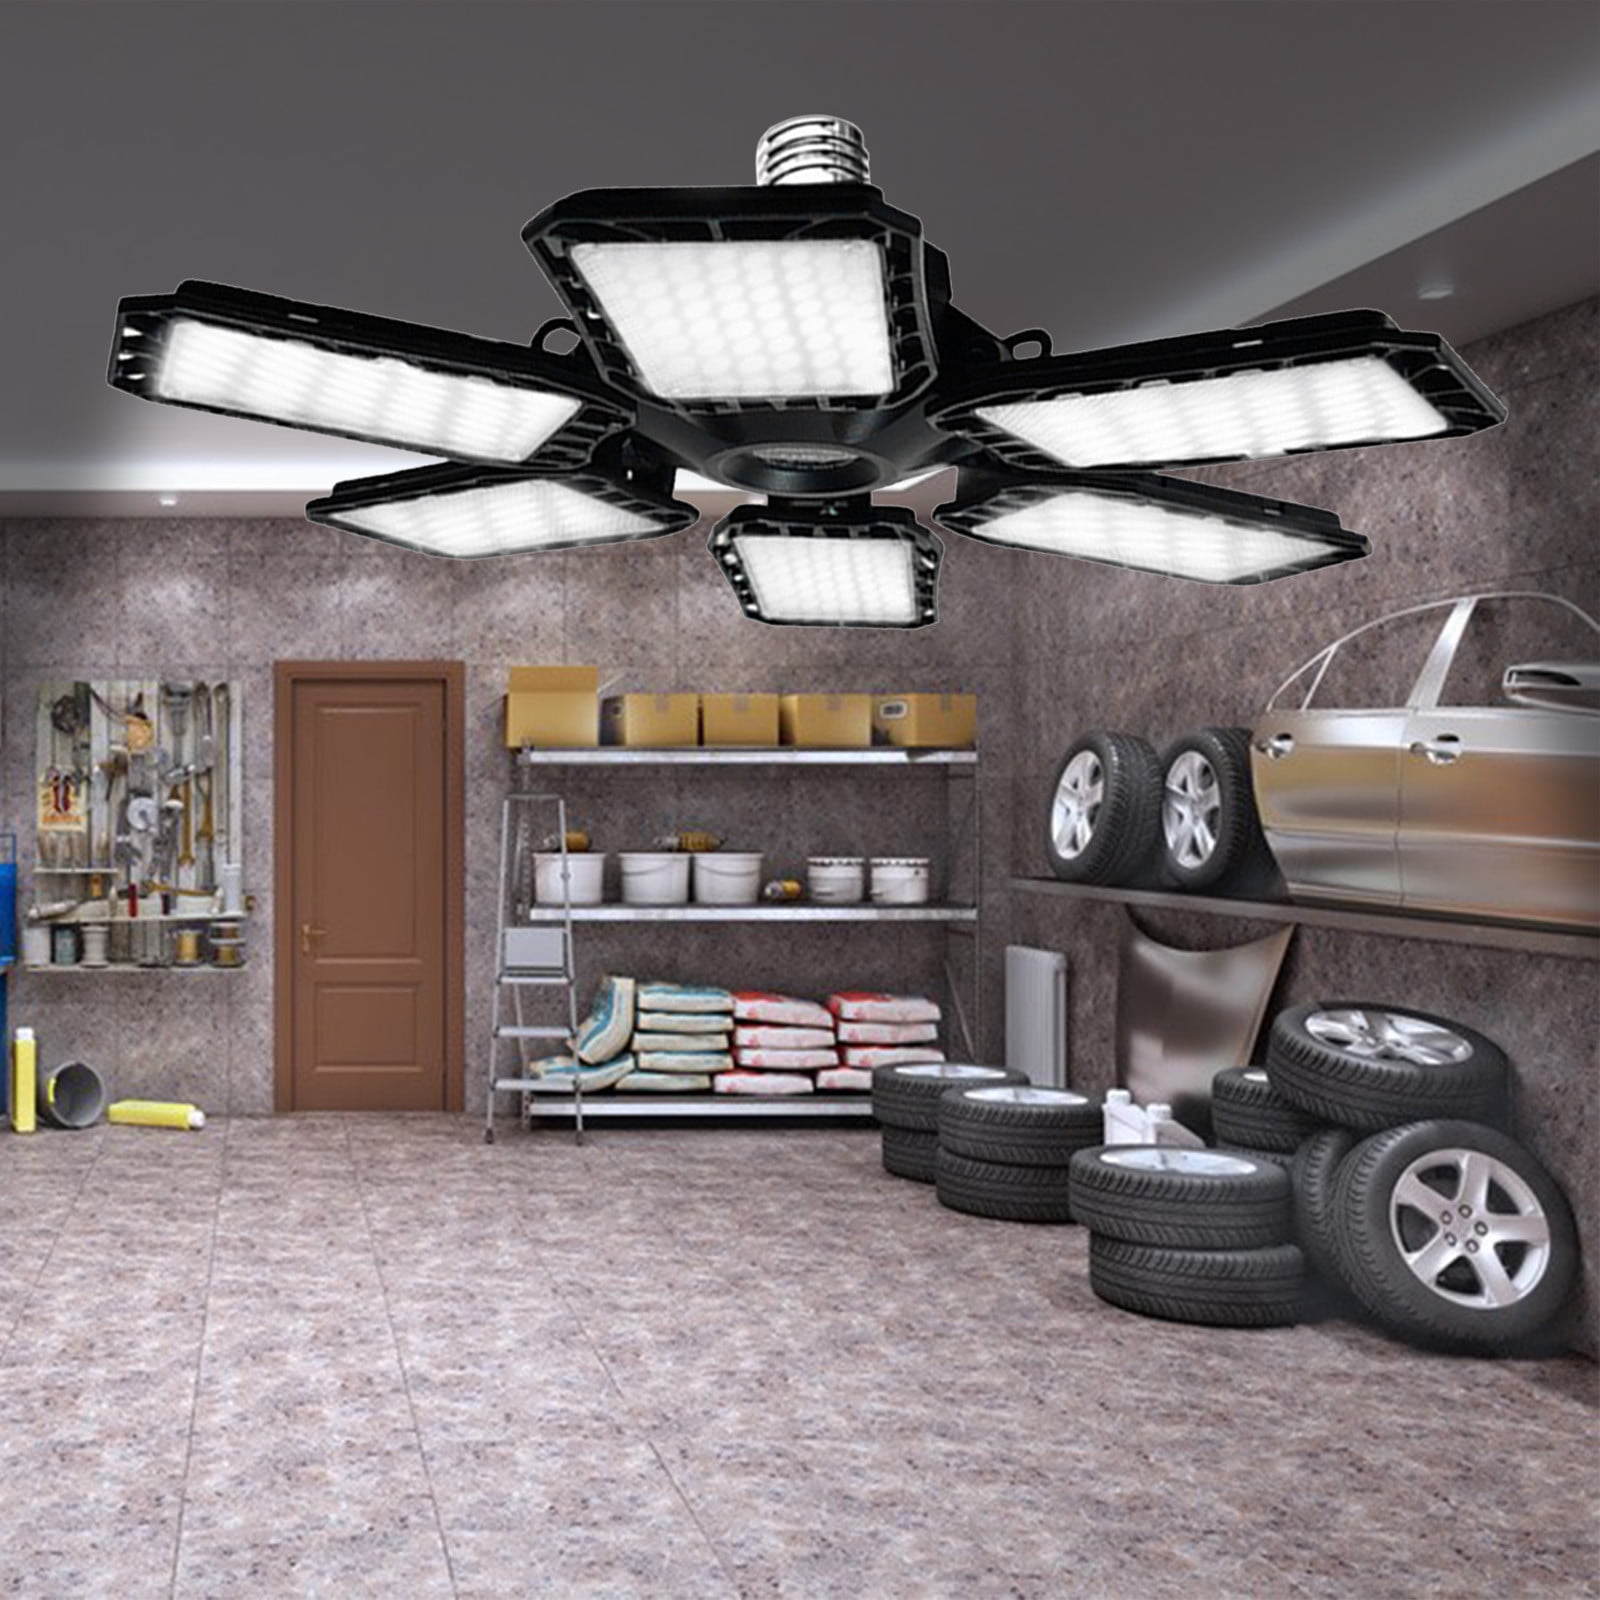 Led Garage Lights, Deformable Led Garage Ceiling Lights With Adjustables  Panels, Led Shop Lights For Garage Workshop Basement Support E26/e27 Screw